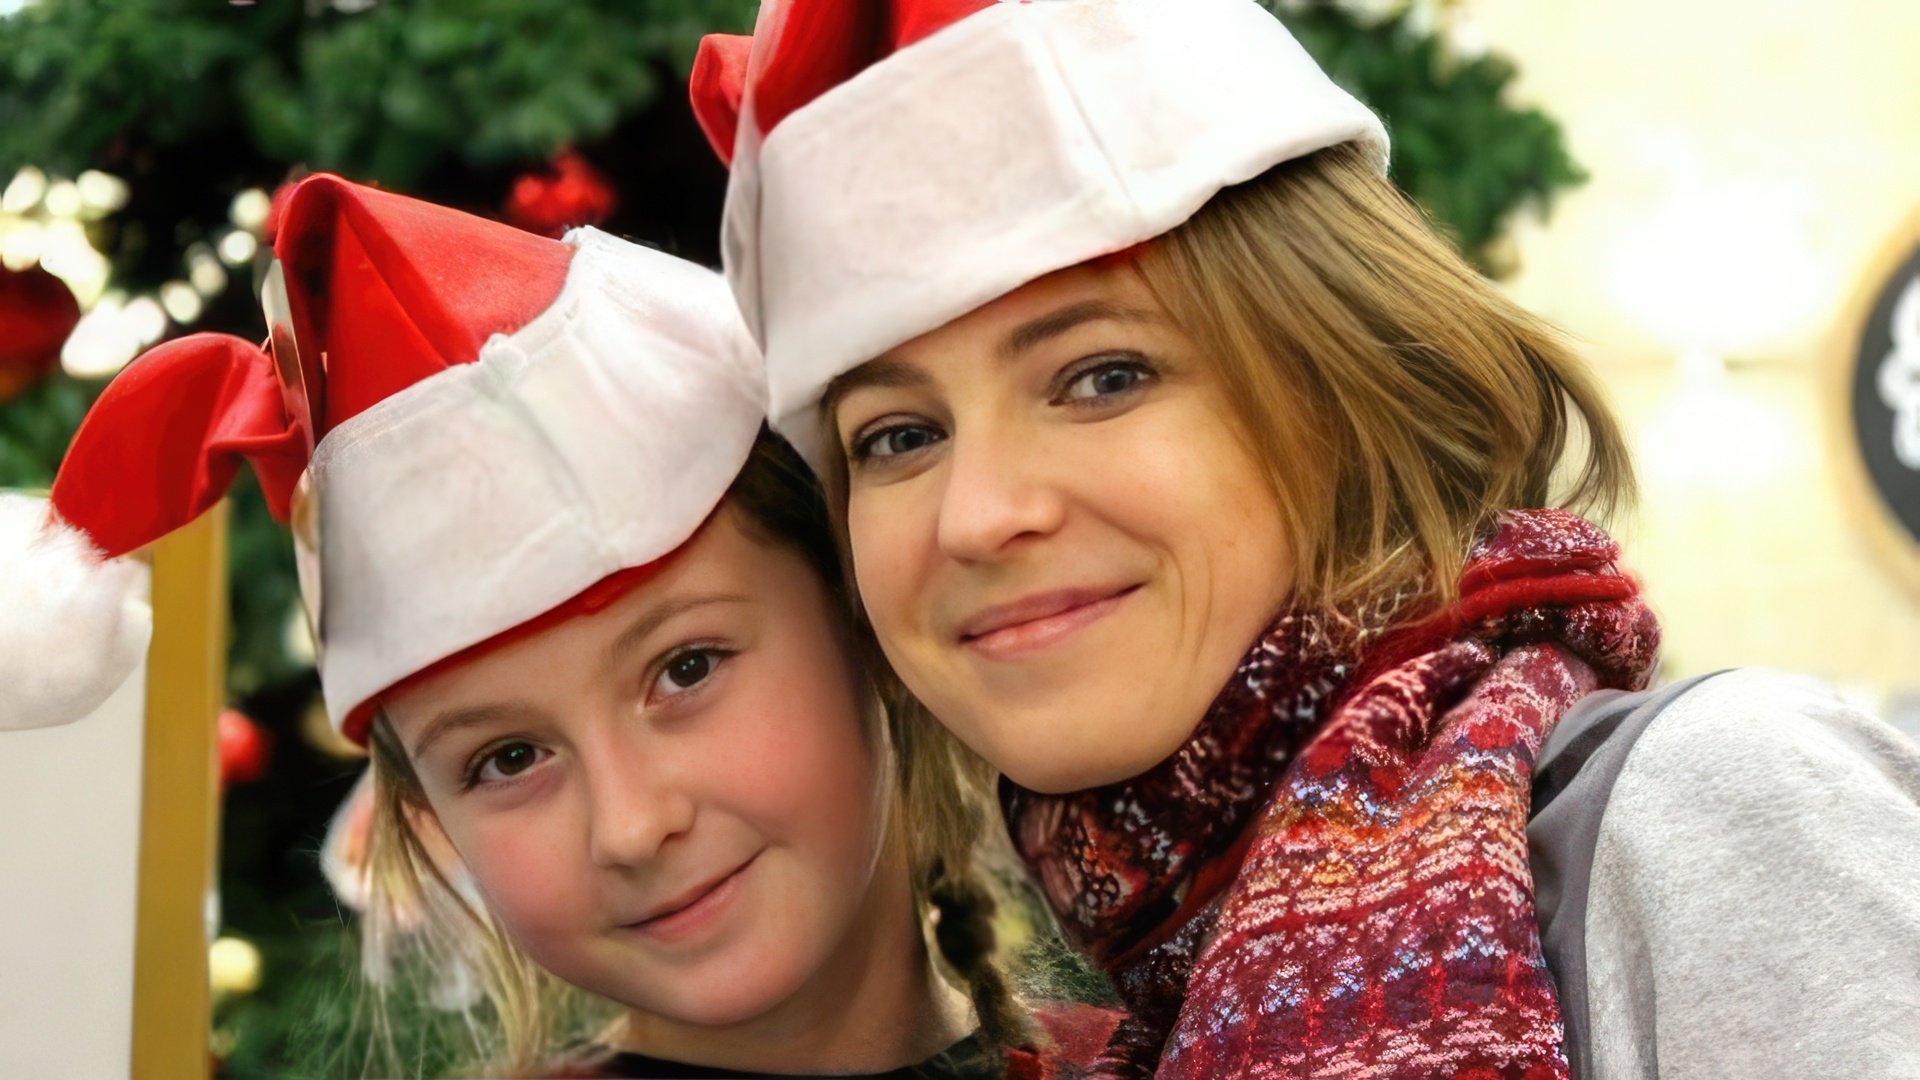 Natalia Poklonskaya and her daughter Anastasia